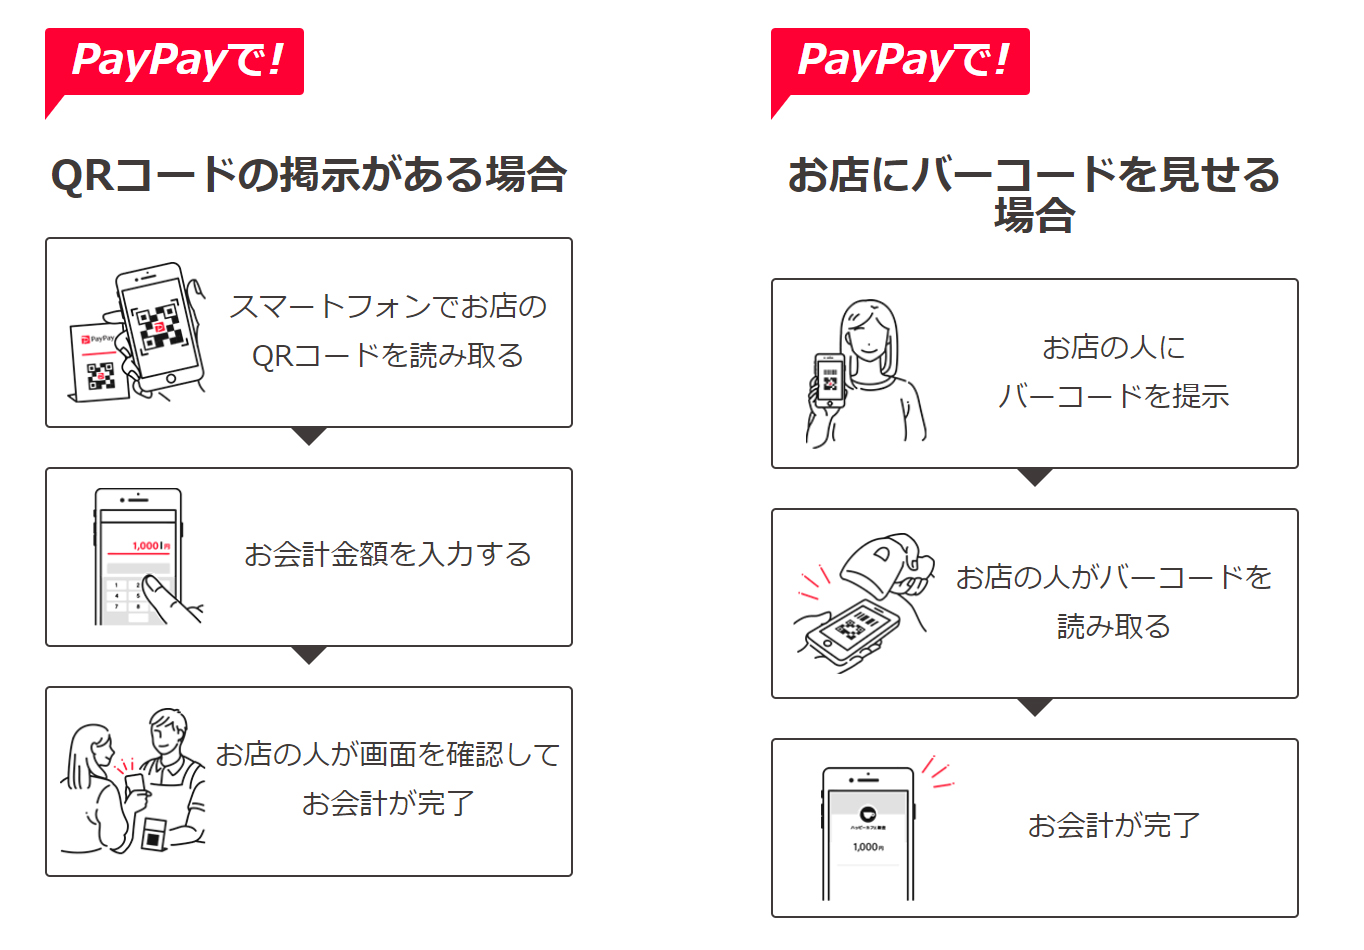 PayPayの支払い方法。PayPayのマークがあるお店で利用できます